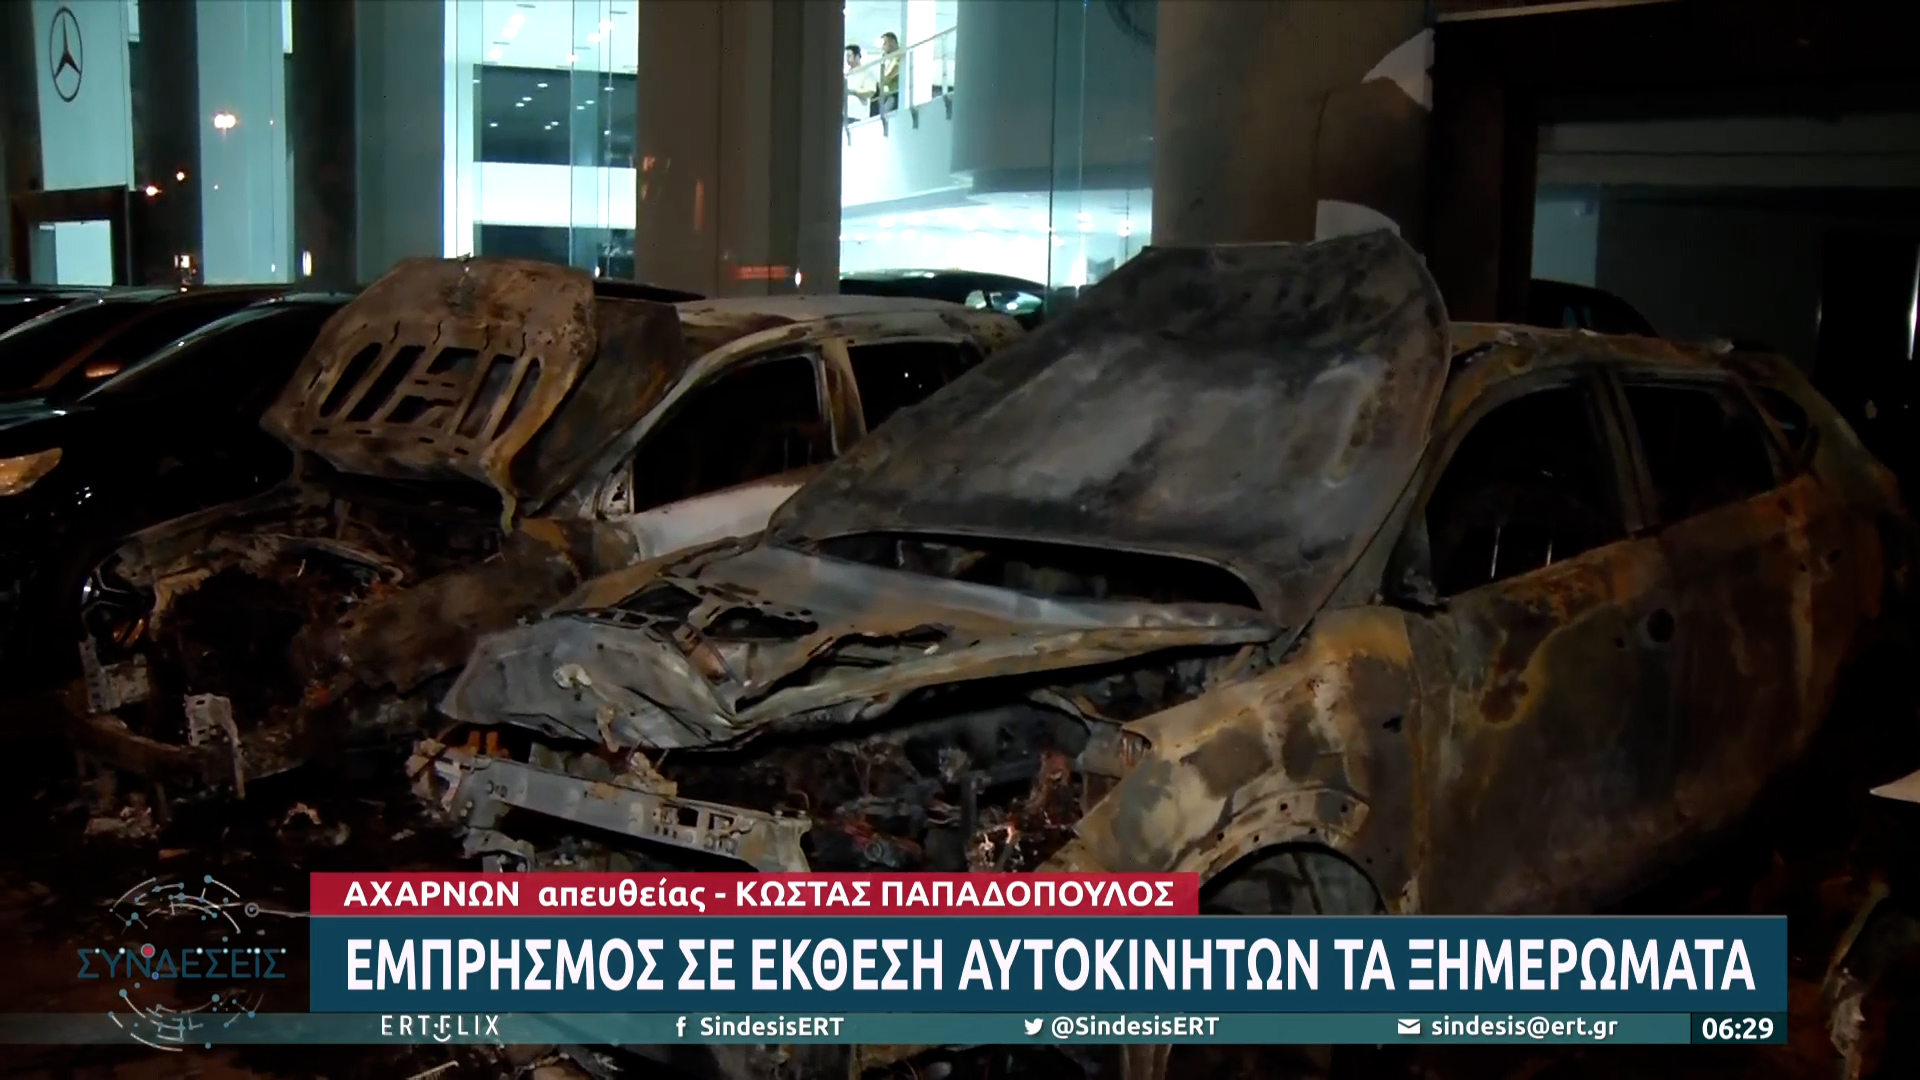 Εμπρησμός σε έκθεση αυτοκινήτων στην Αχαρνών – Τι είπε αυτόπτης μάρτυρας (video)